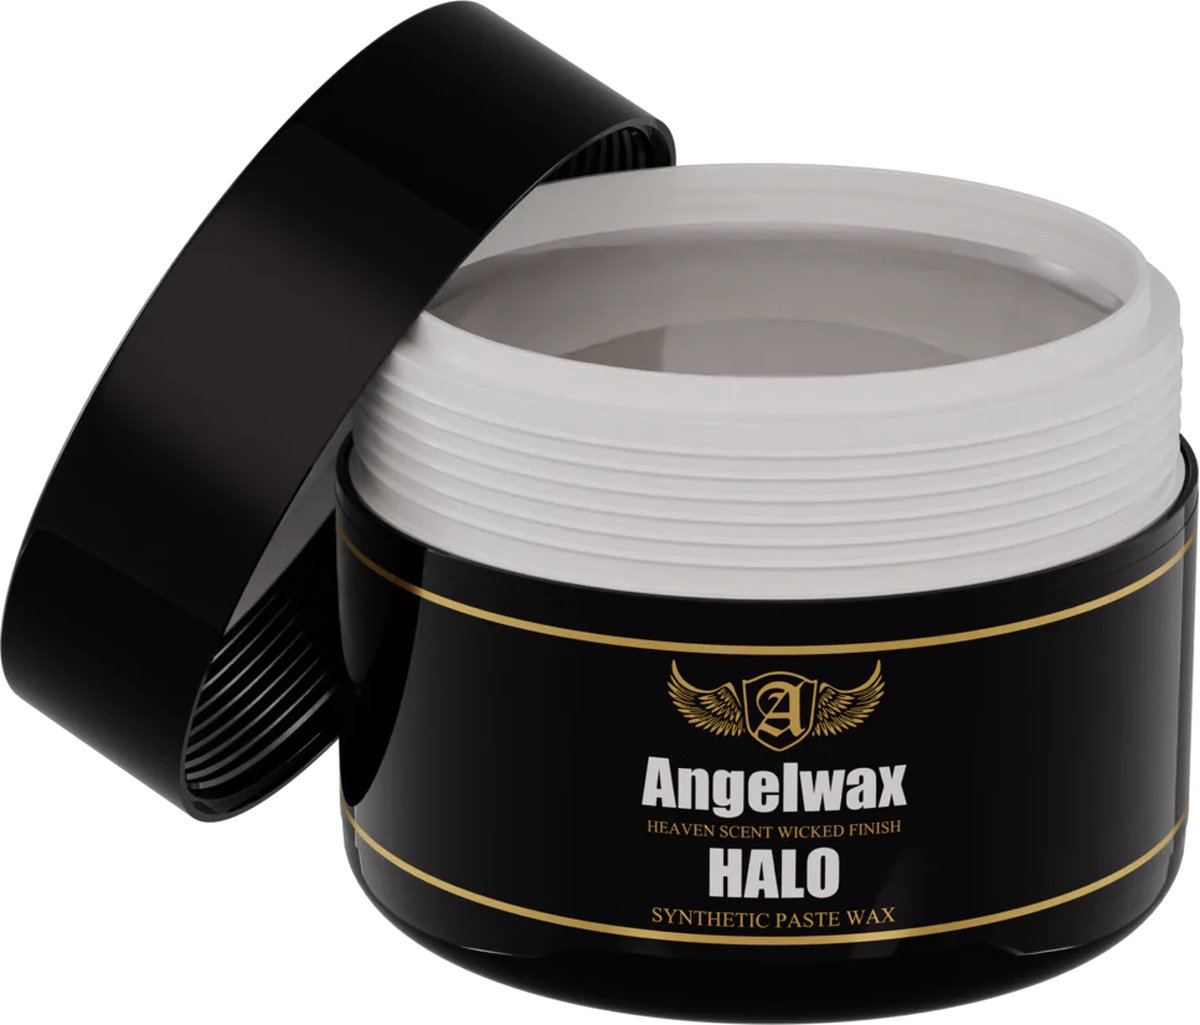 Angelwax Halo 250ml - synthetische pastewax - biedt een superieure bescherming